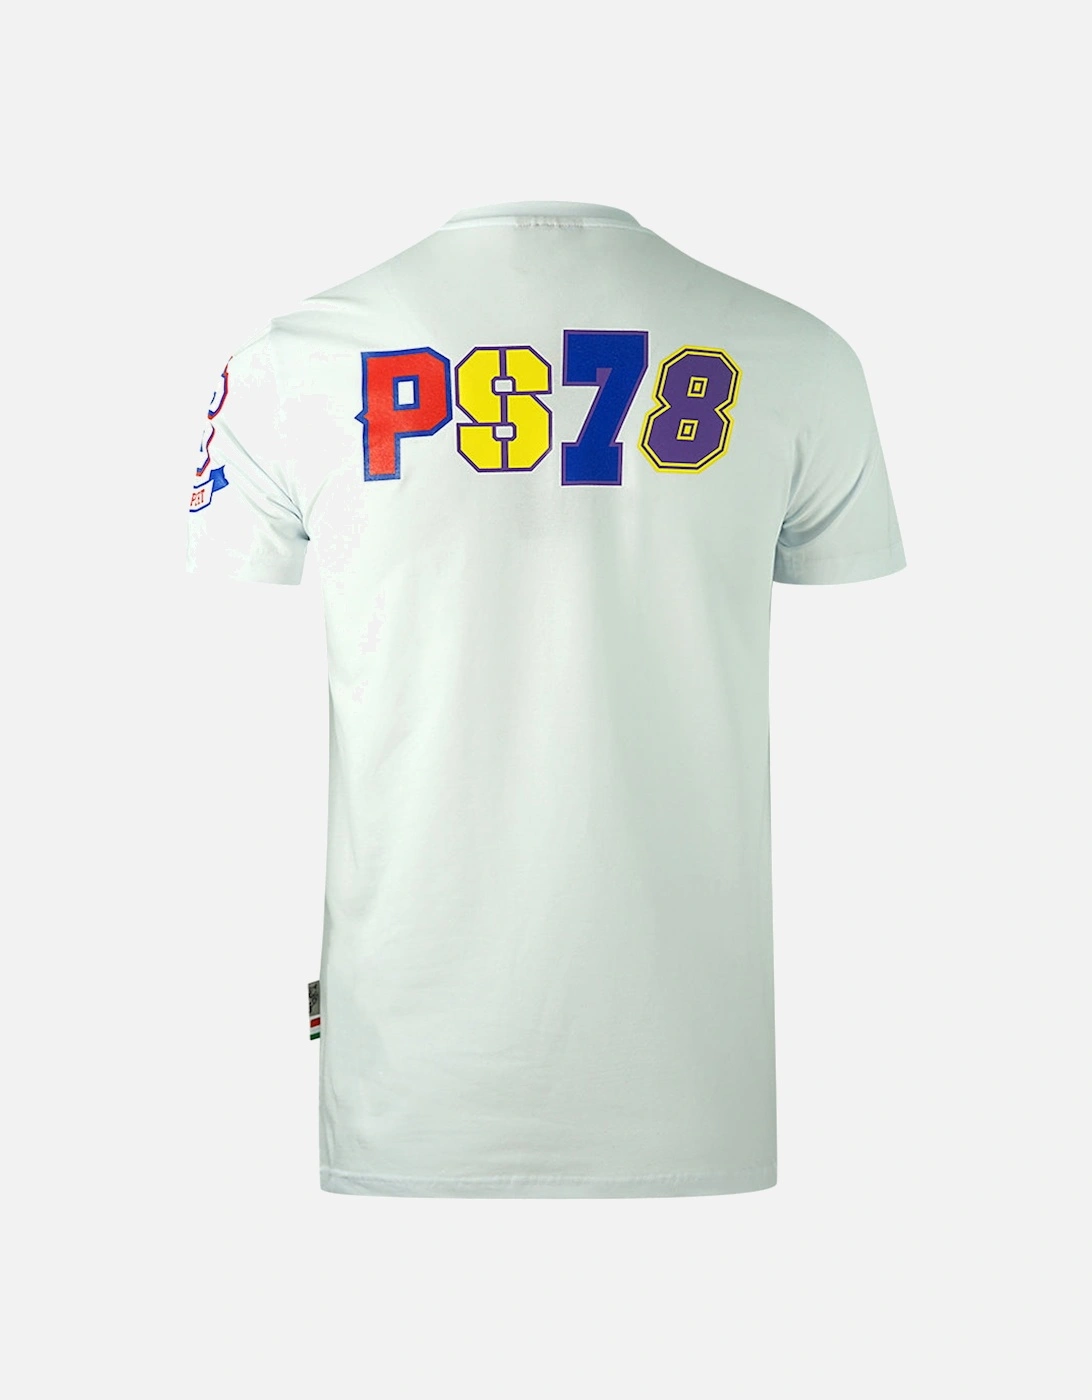 Plein Sport Multi Colour Logos White T-Shirt